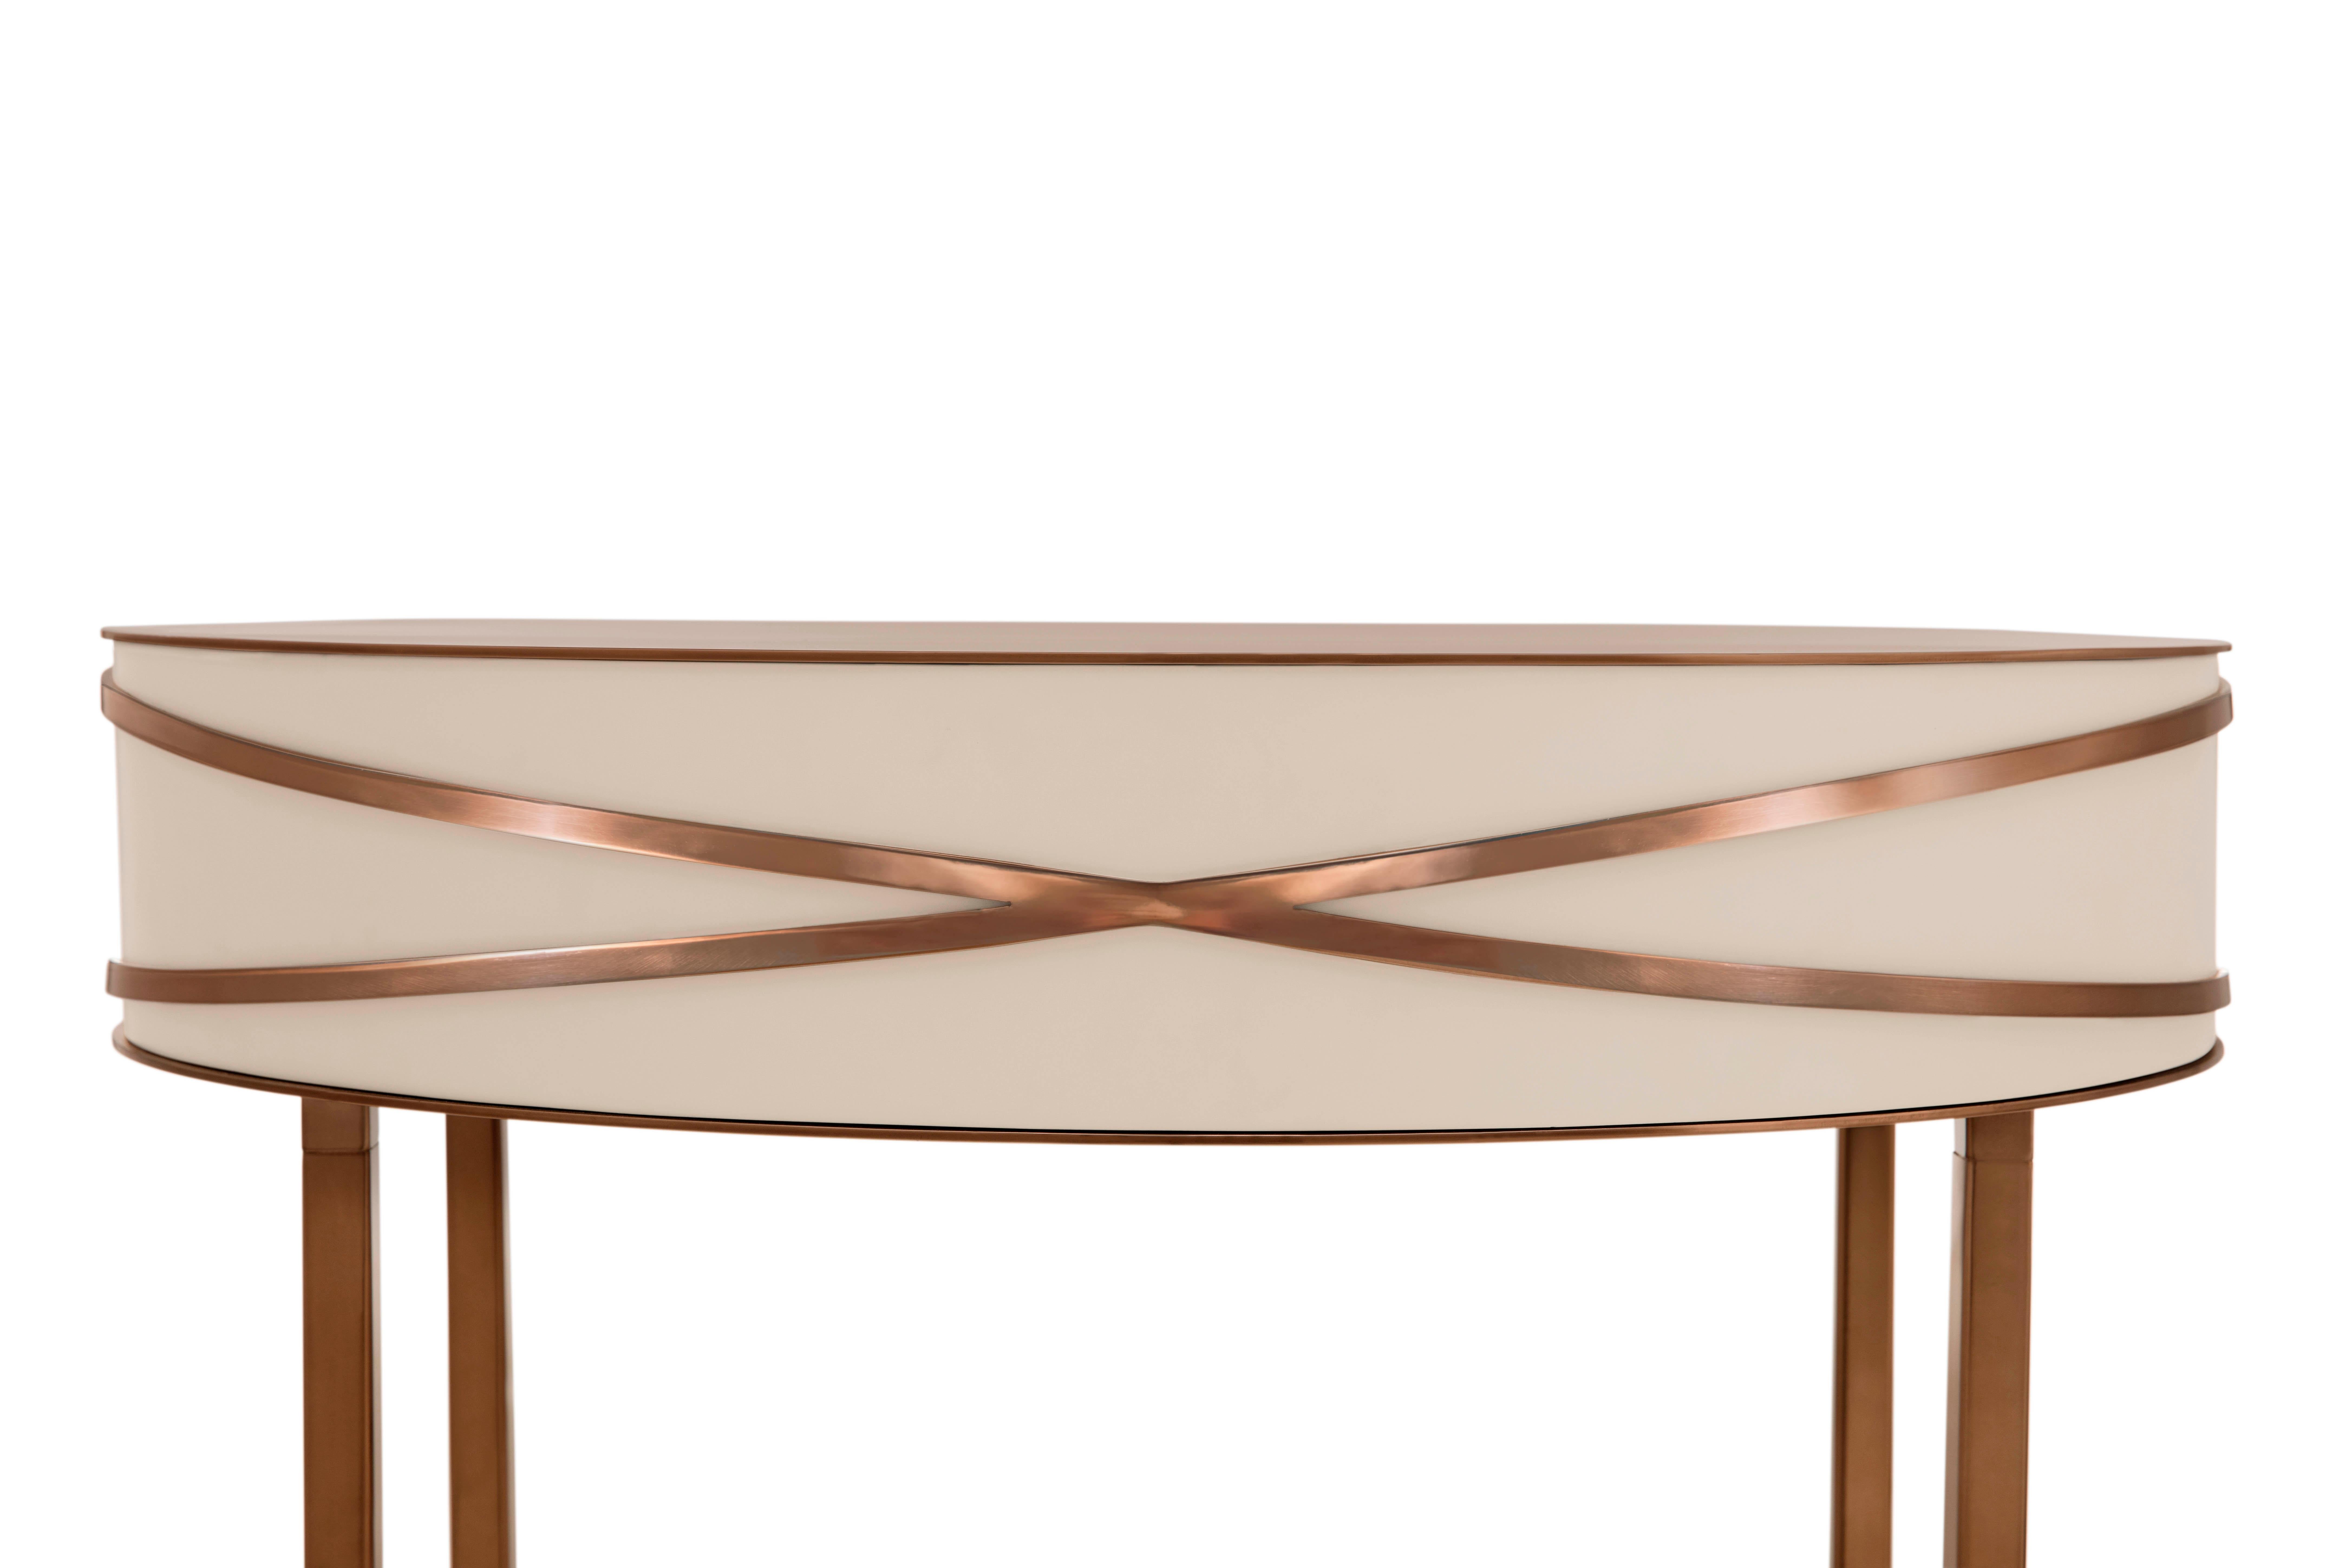 La console ou table de chevet Stella Gray avec garnitures en or rose de Nika Zupanc est une table grise chic avec un tiroir et des garnitures métalliques en or rose.

Nika Zupanc, designer slovène de renom, n'hésite jamais à redéfinir le statu quo